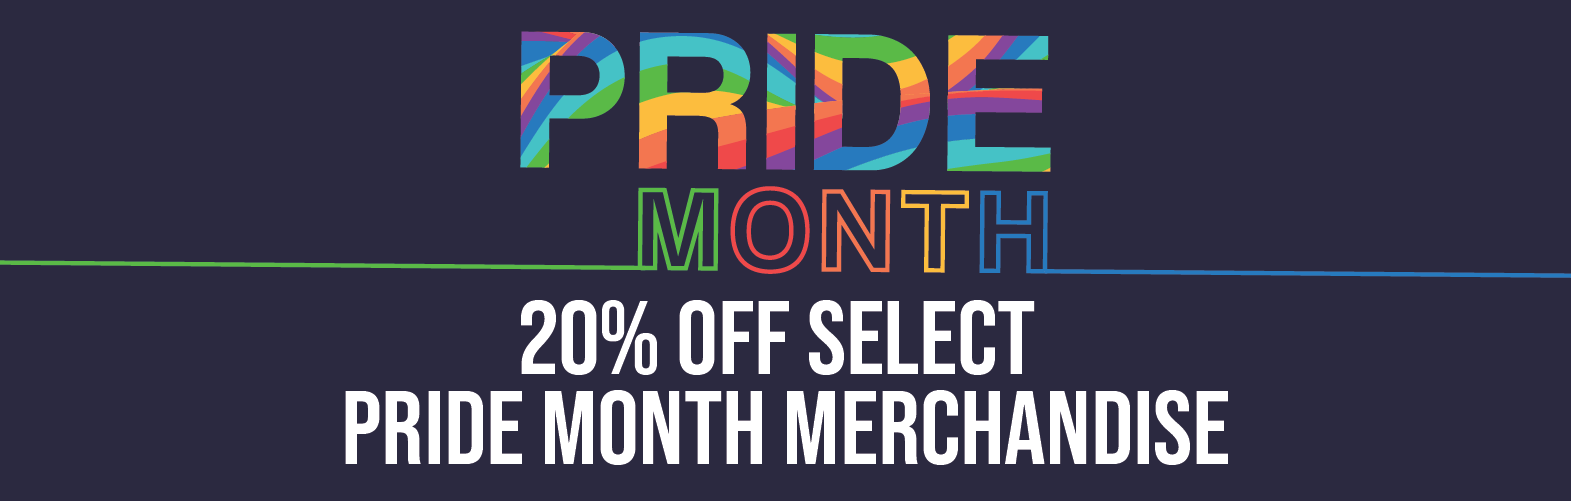 Pride Month Sale at Bronco Bookstore